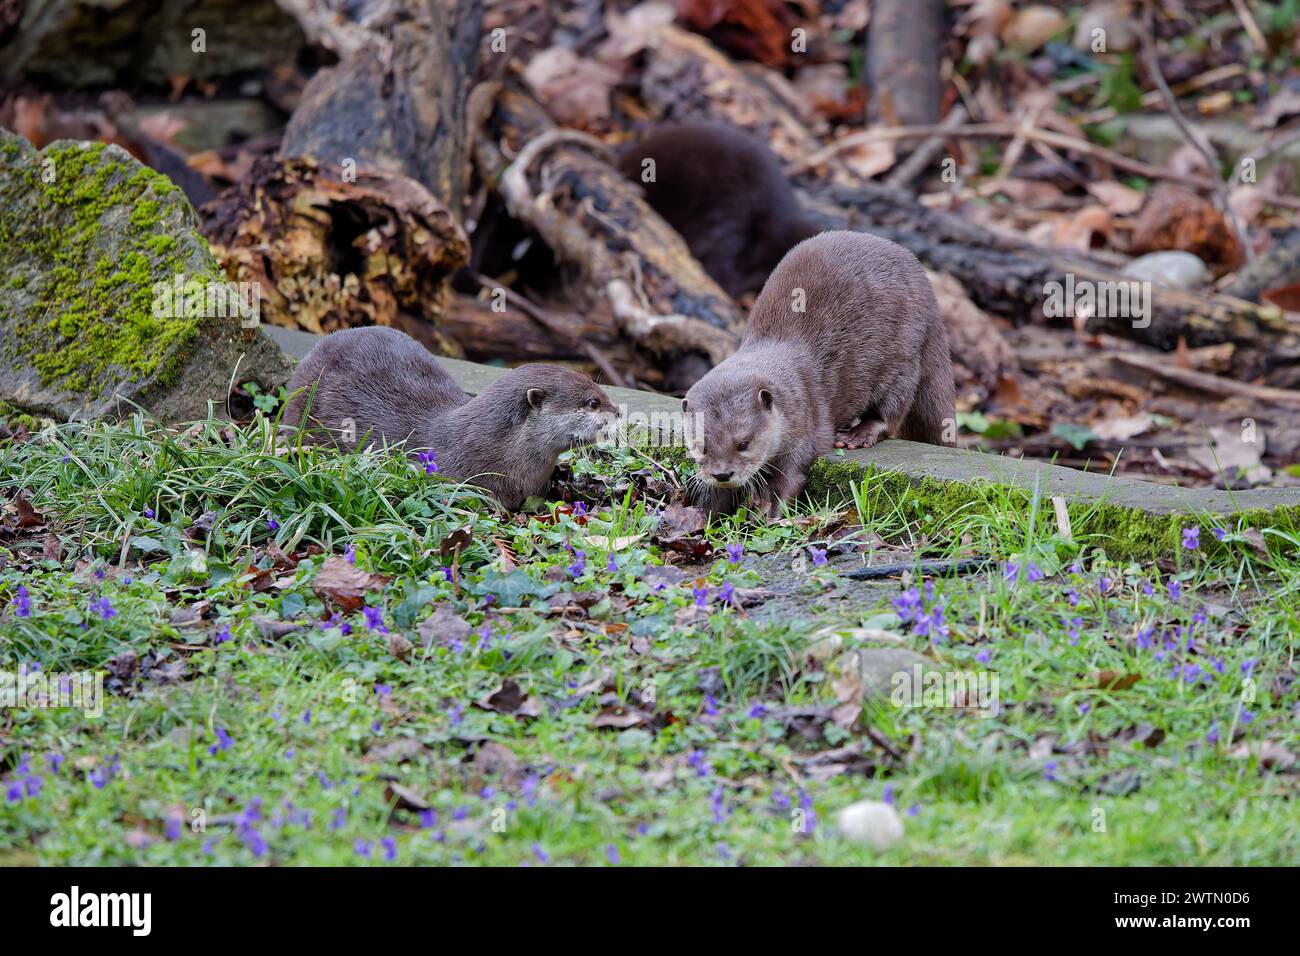 Der kleine klauenlose Otter (Aonyx congicus) findet sich nur in der Mitte Afrikas, im tropischen Gürtel. Stockfoto